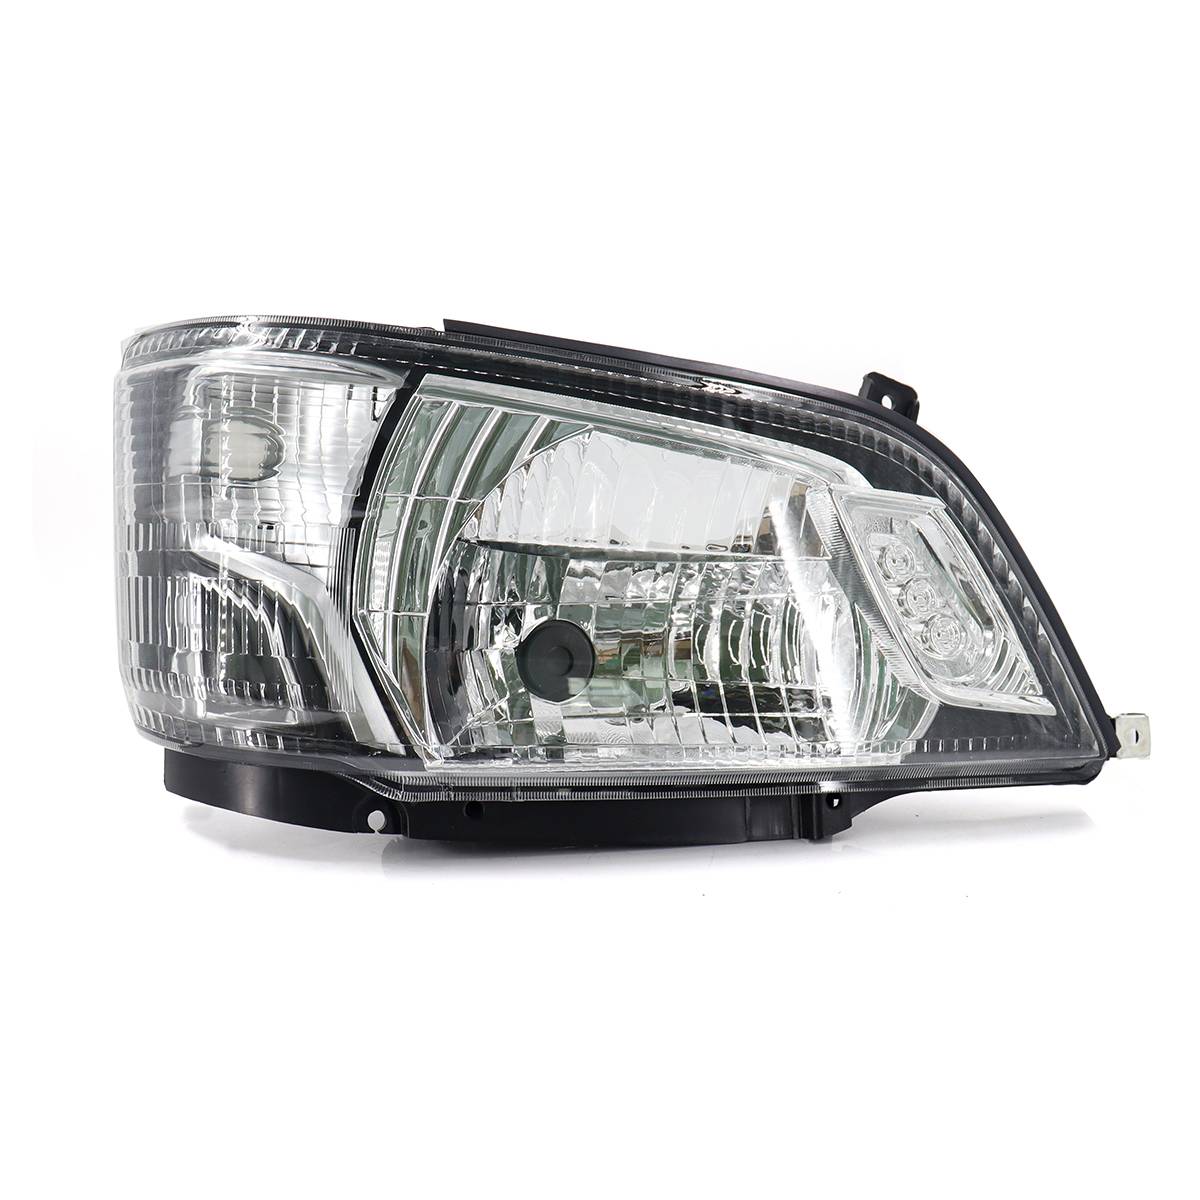 Wholesale Auto Parts Car New Headlight Head Light Head Lamp For Hino 300 Narrow